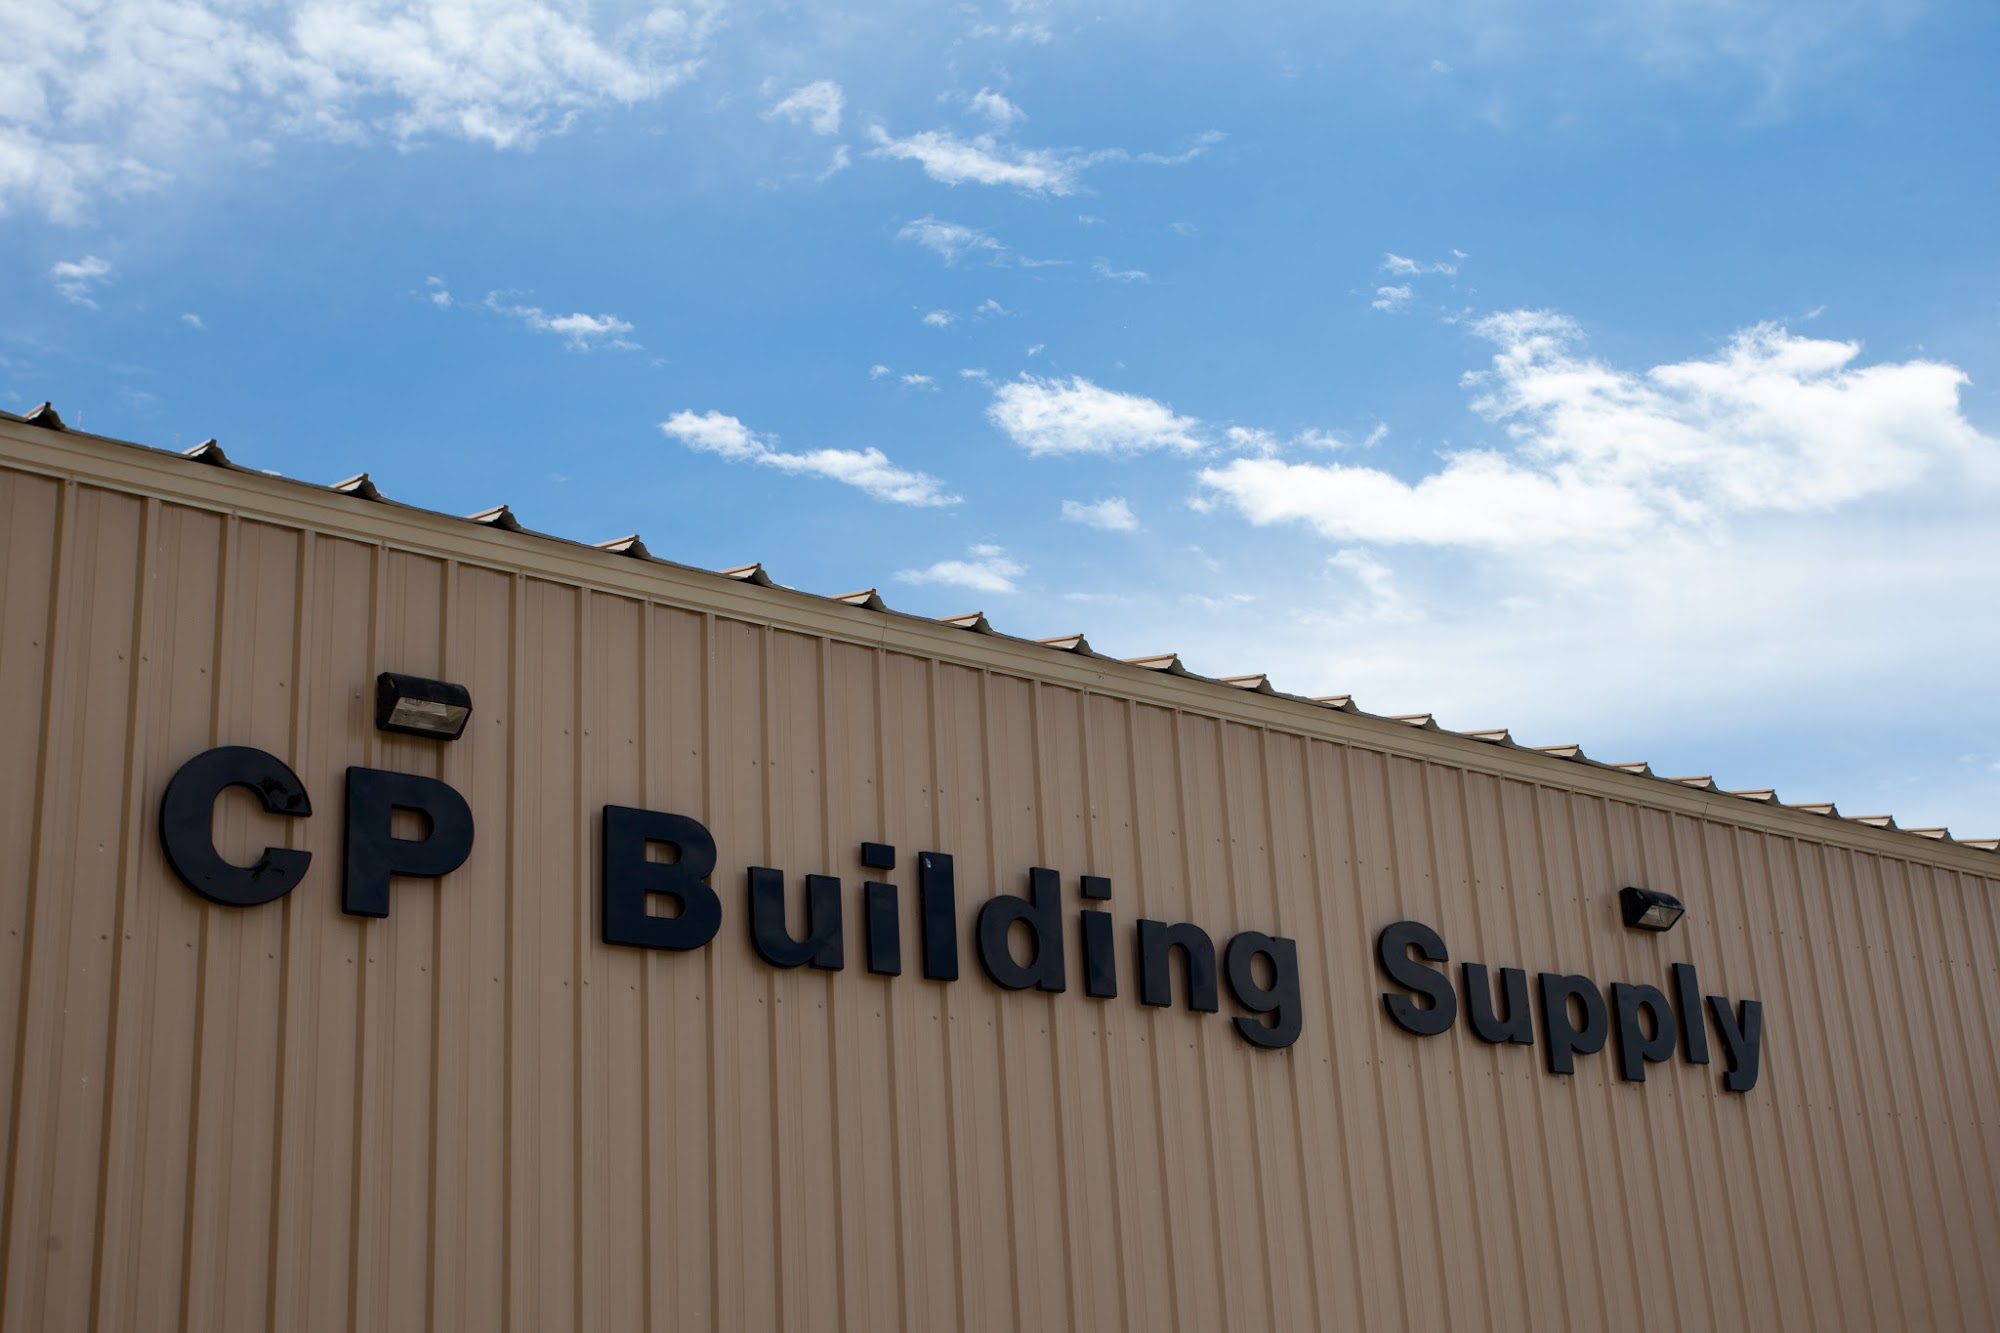 C P Building Supply